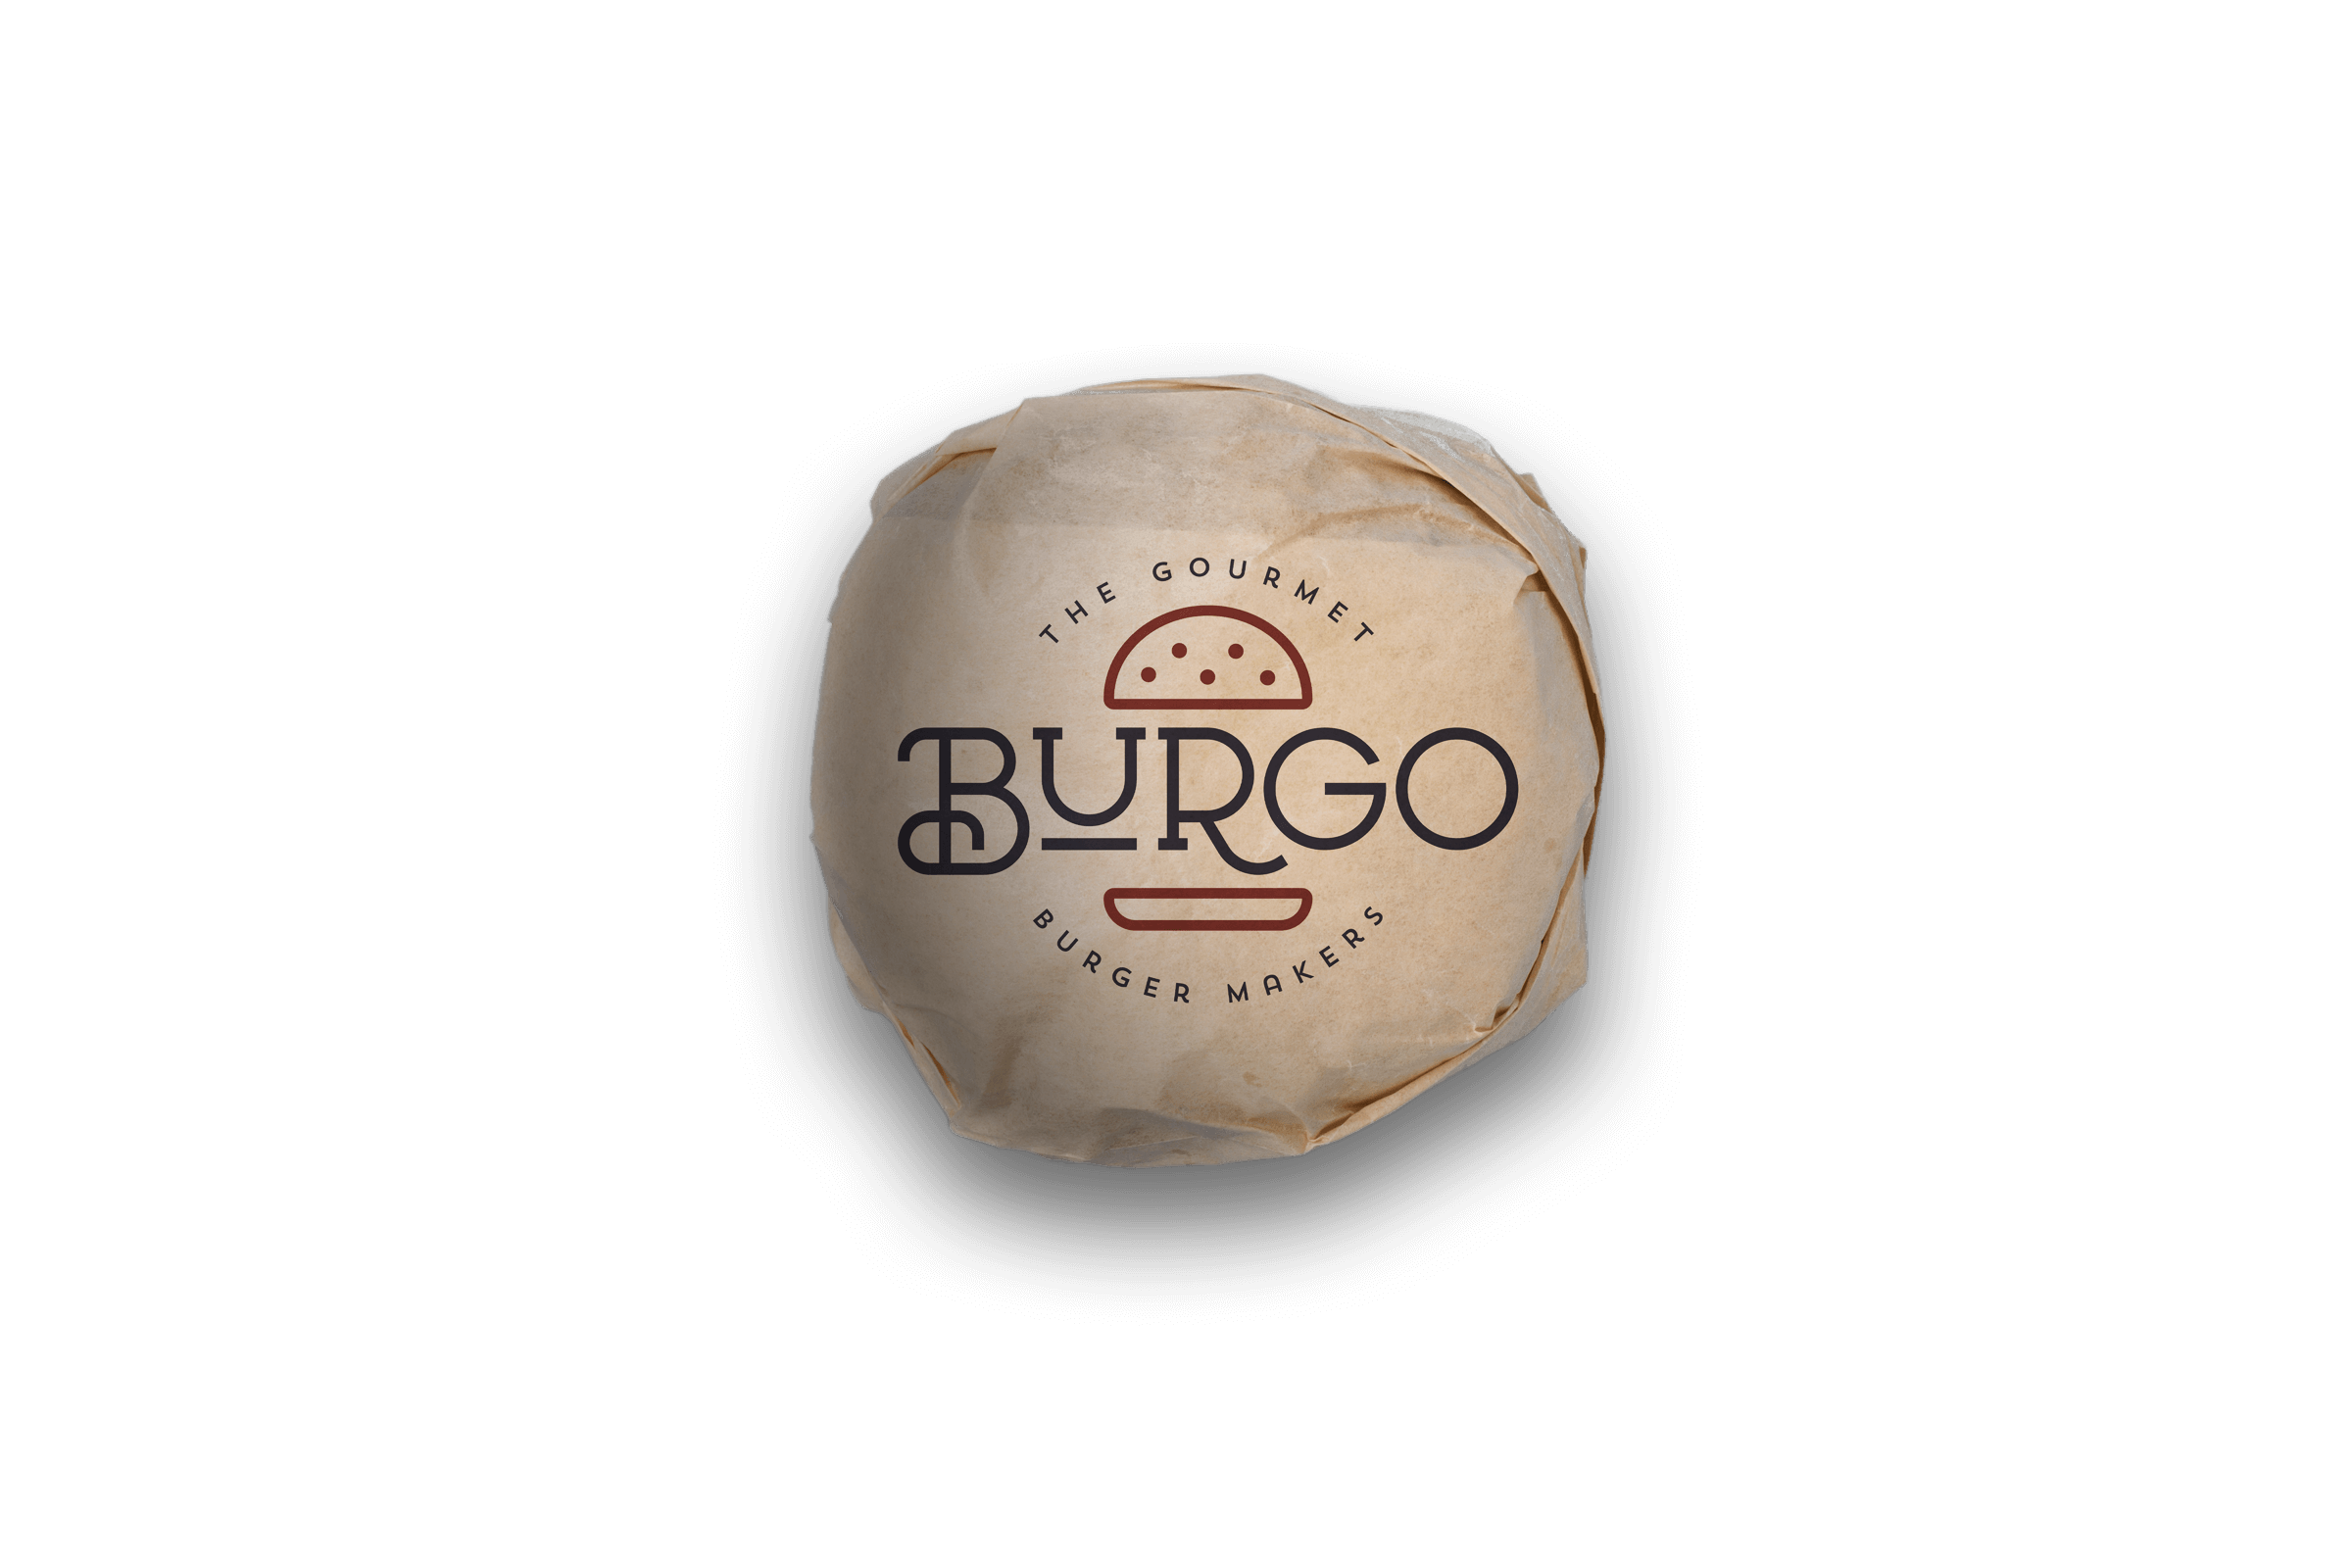 Burgo Packaging by Peek Creative Limited